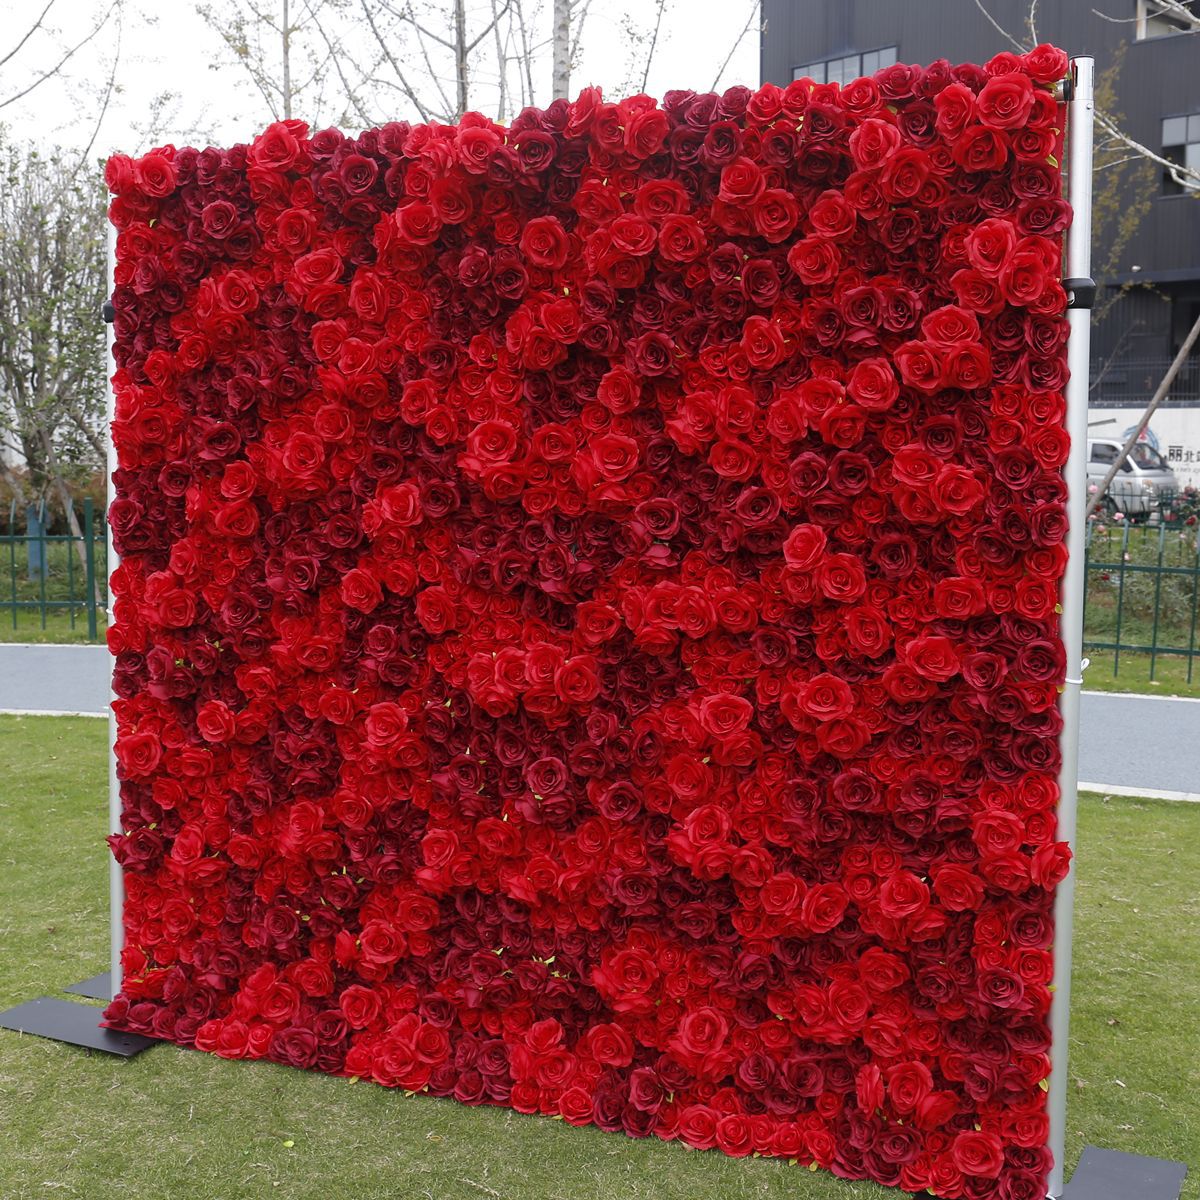 3D simulim 3D me pëlhurë të kuqe në fund të murit të sfondit të murit me lule, dekorim dyqanesh dekorimi i dasmës mur trëndafili